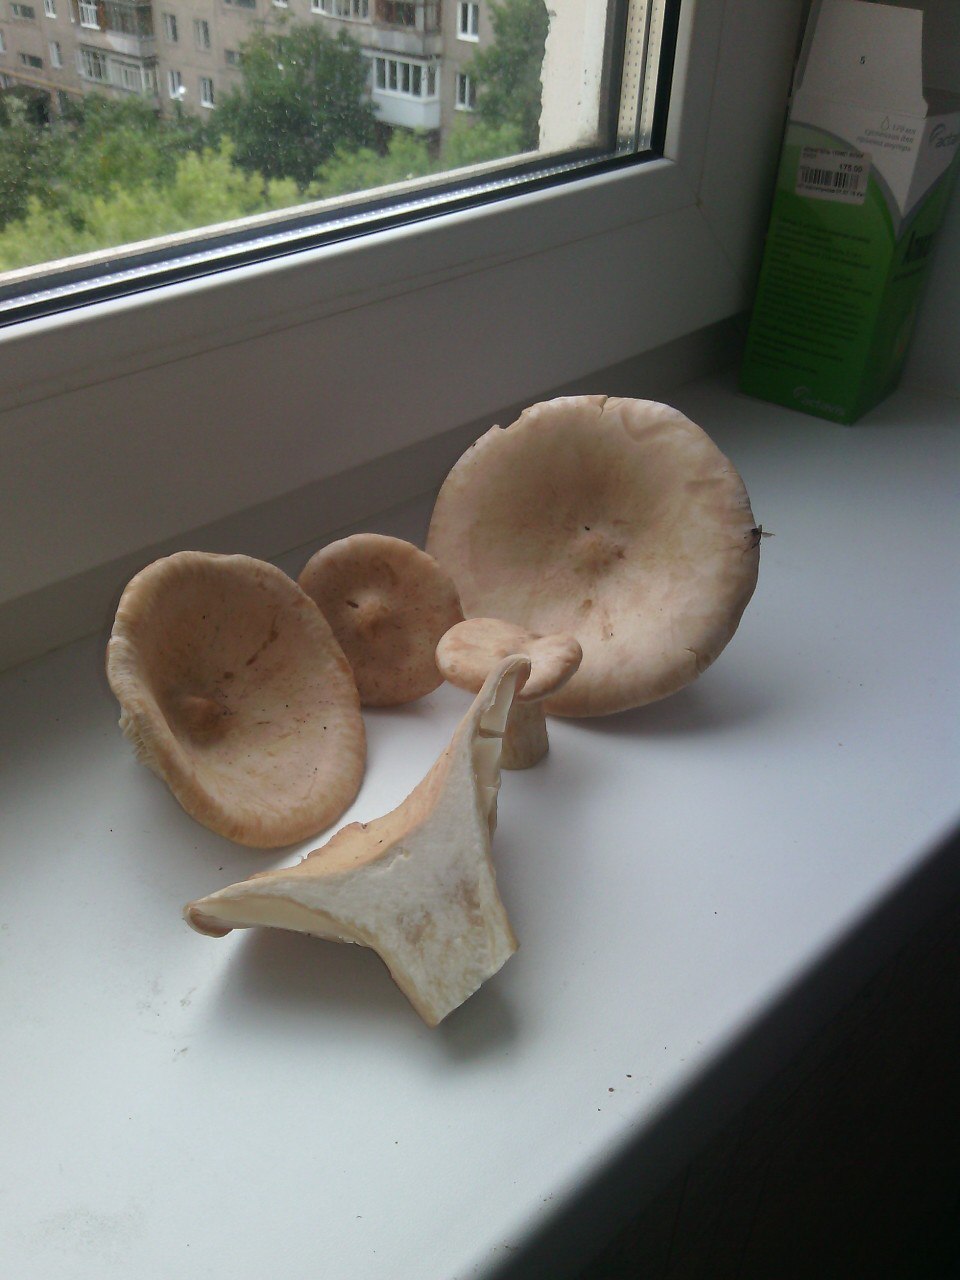 Здравствуйте, пожалуйста подскажите что это за грибы?